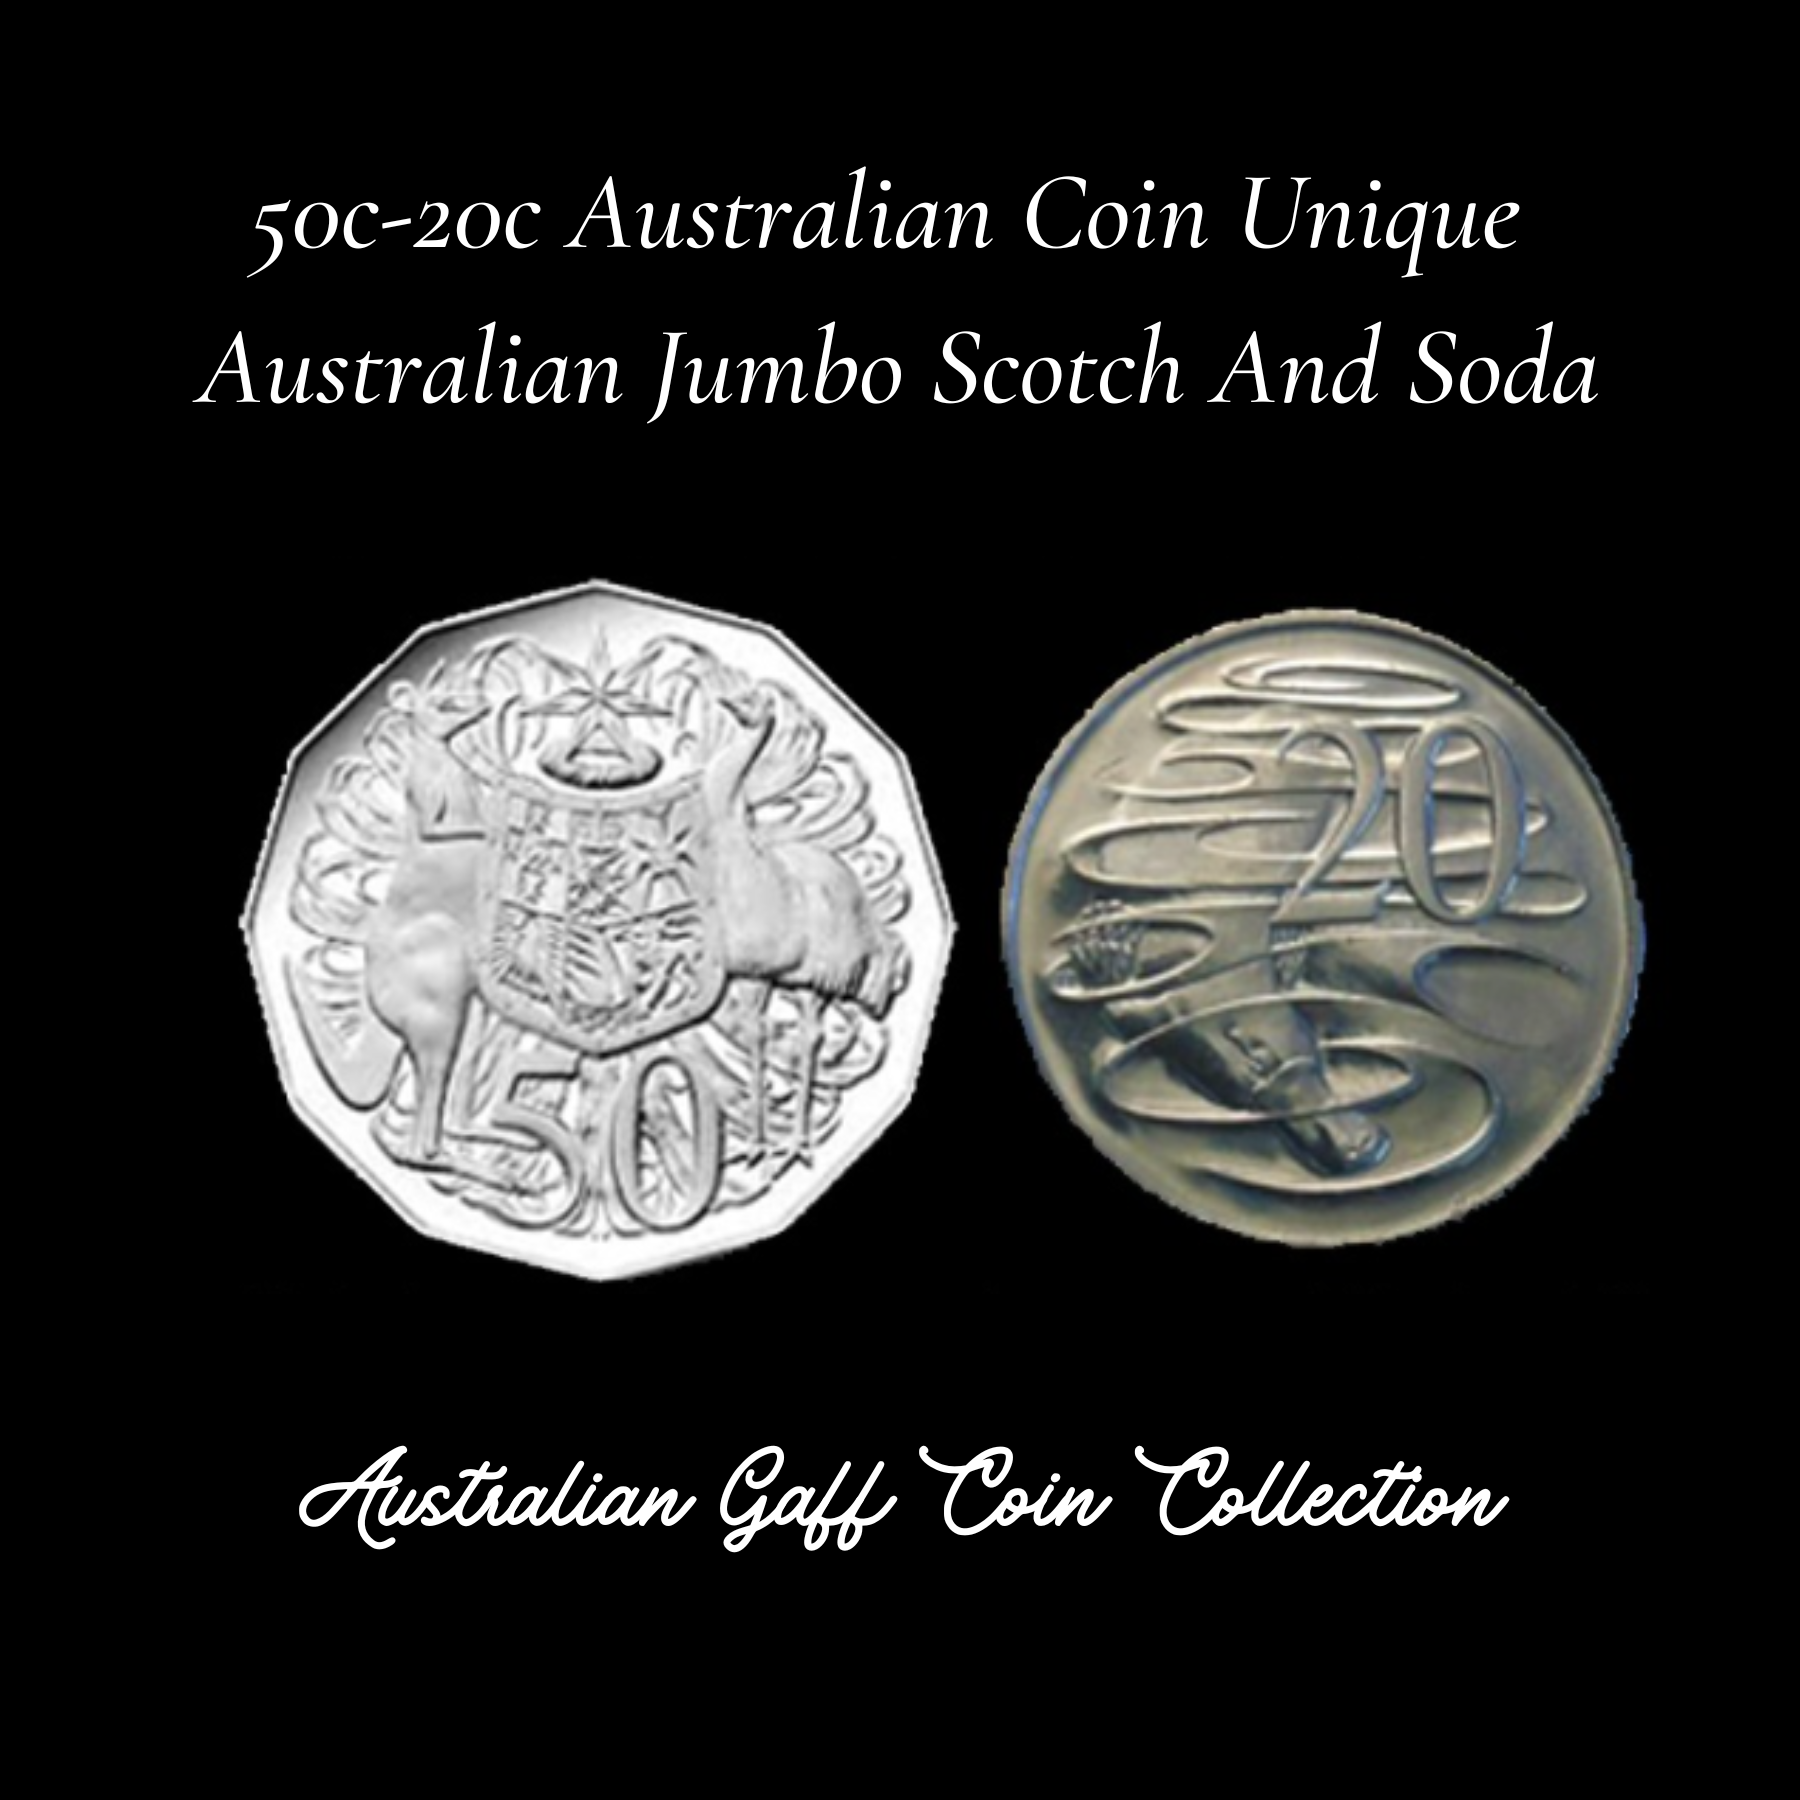 Coin Unique Australian 50c-20c